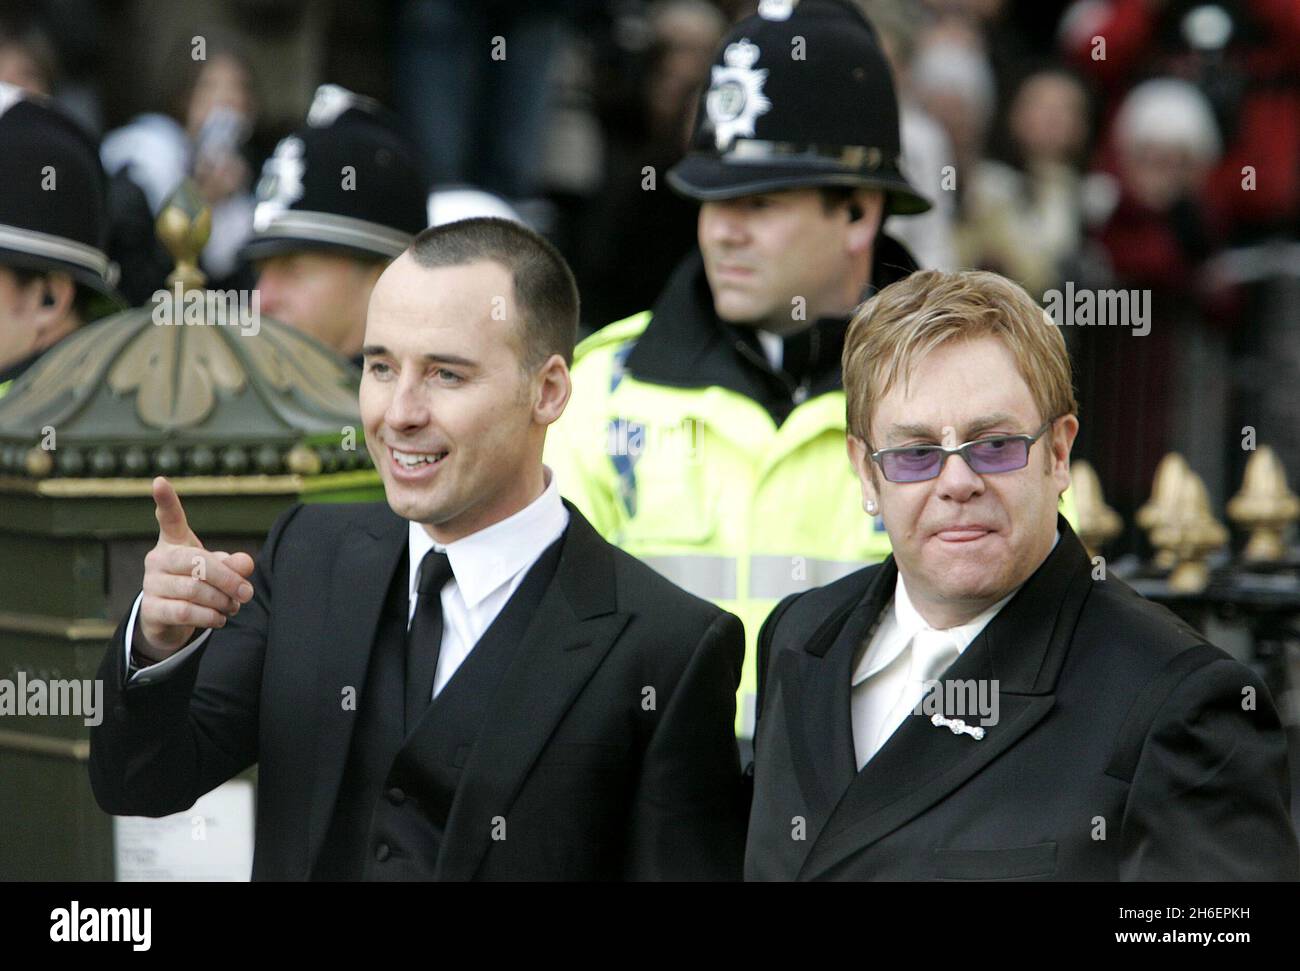 Sir Elton John et son associé David Fubery quittent le Guildhall à Windsor aujourd'hui après s'être marié le premier jour les partenariats civils homosexuels deviennent légaux en Angleterre .Jeff Moore/allactiondigital.com Banque D'Images